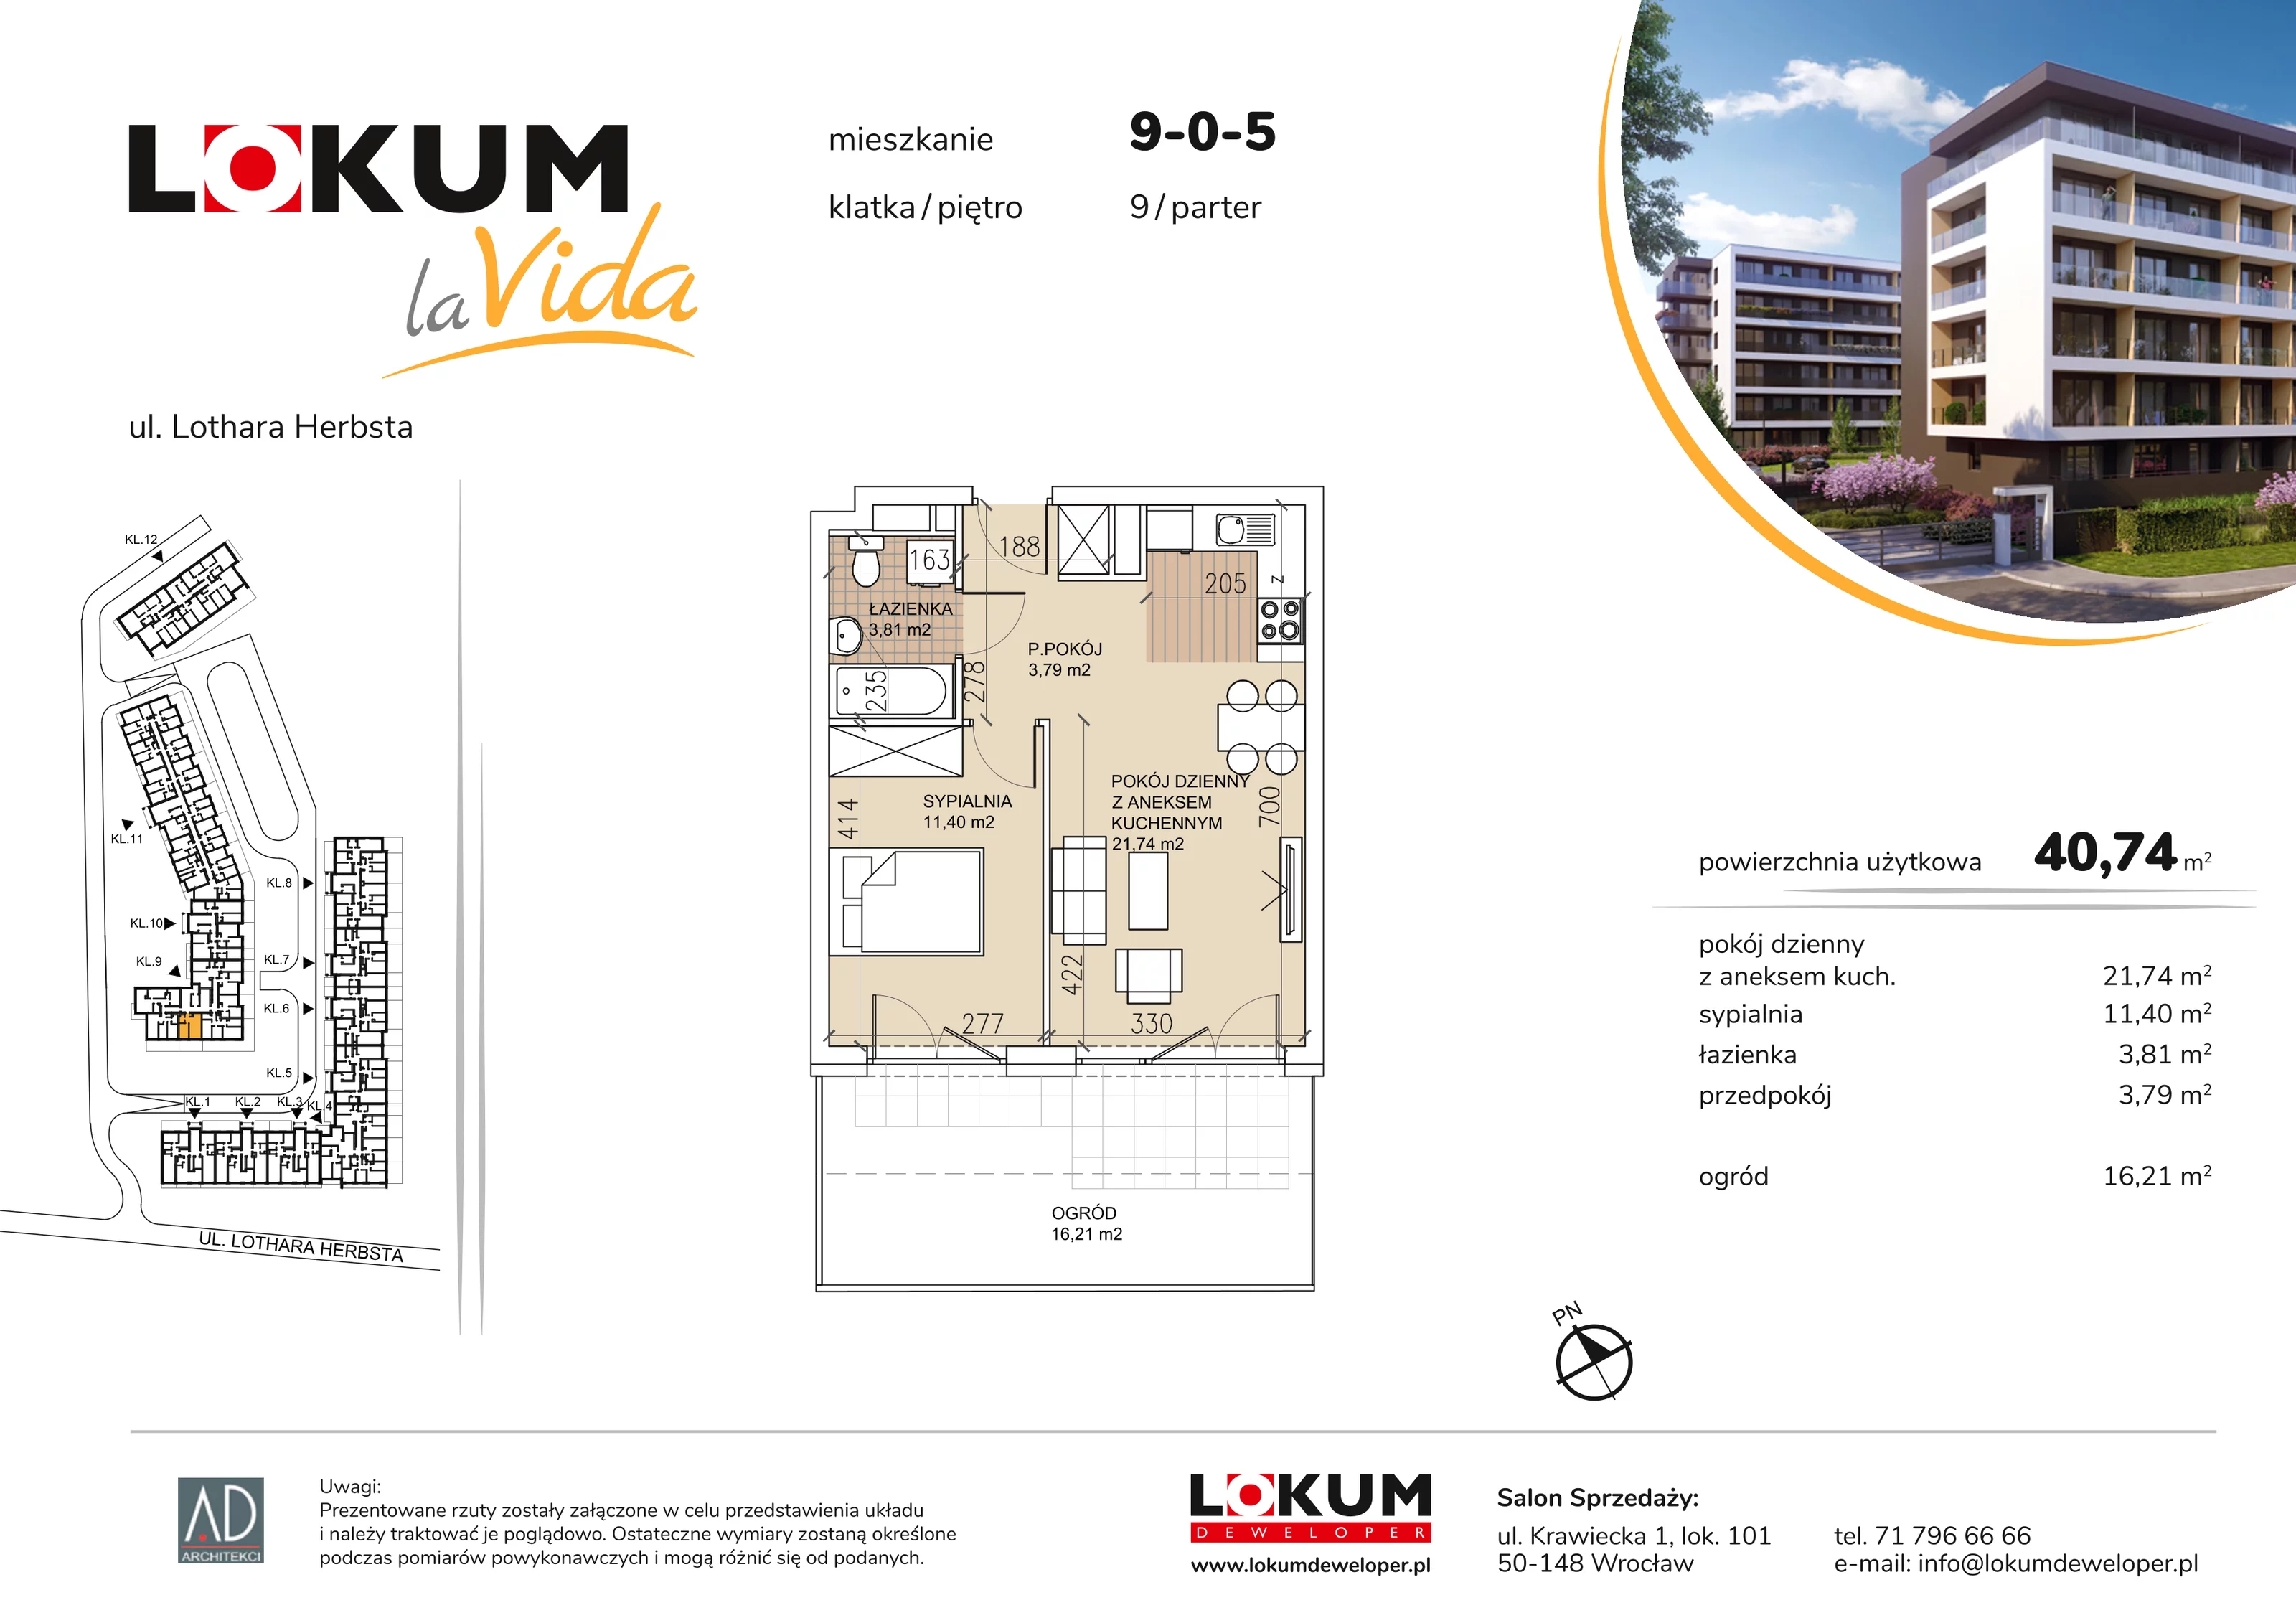 Mieszkanie 40,74 m², parter, oferta nr 9-0-5, Lokum la Vida, Wrocław, Sołtysowice, ul. Lothara Herbsta